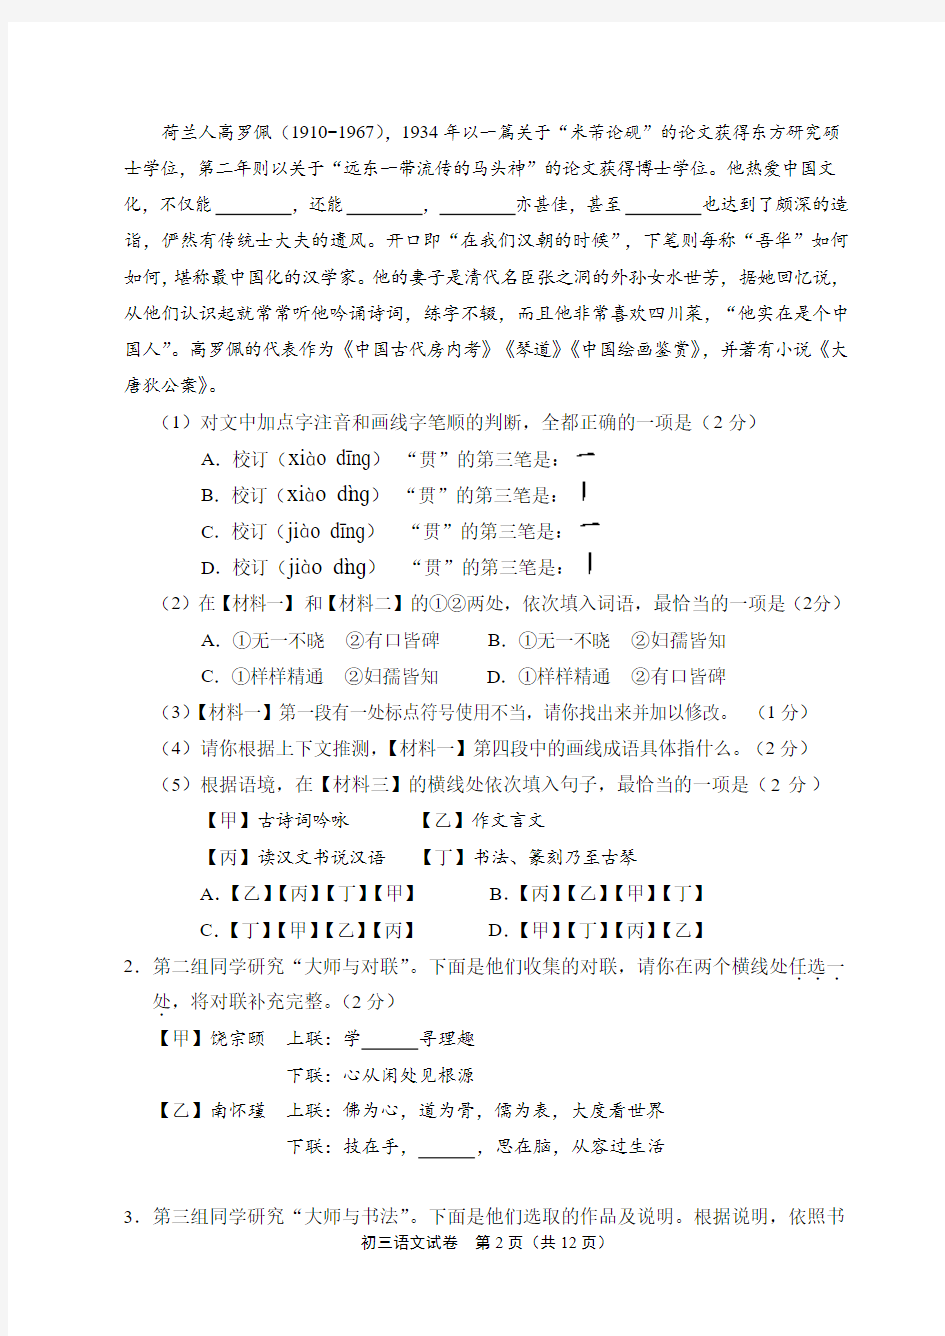 2018年北京石景山区语文初三二模试卷及答案